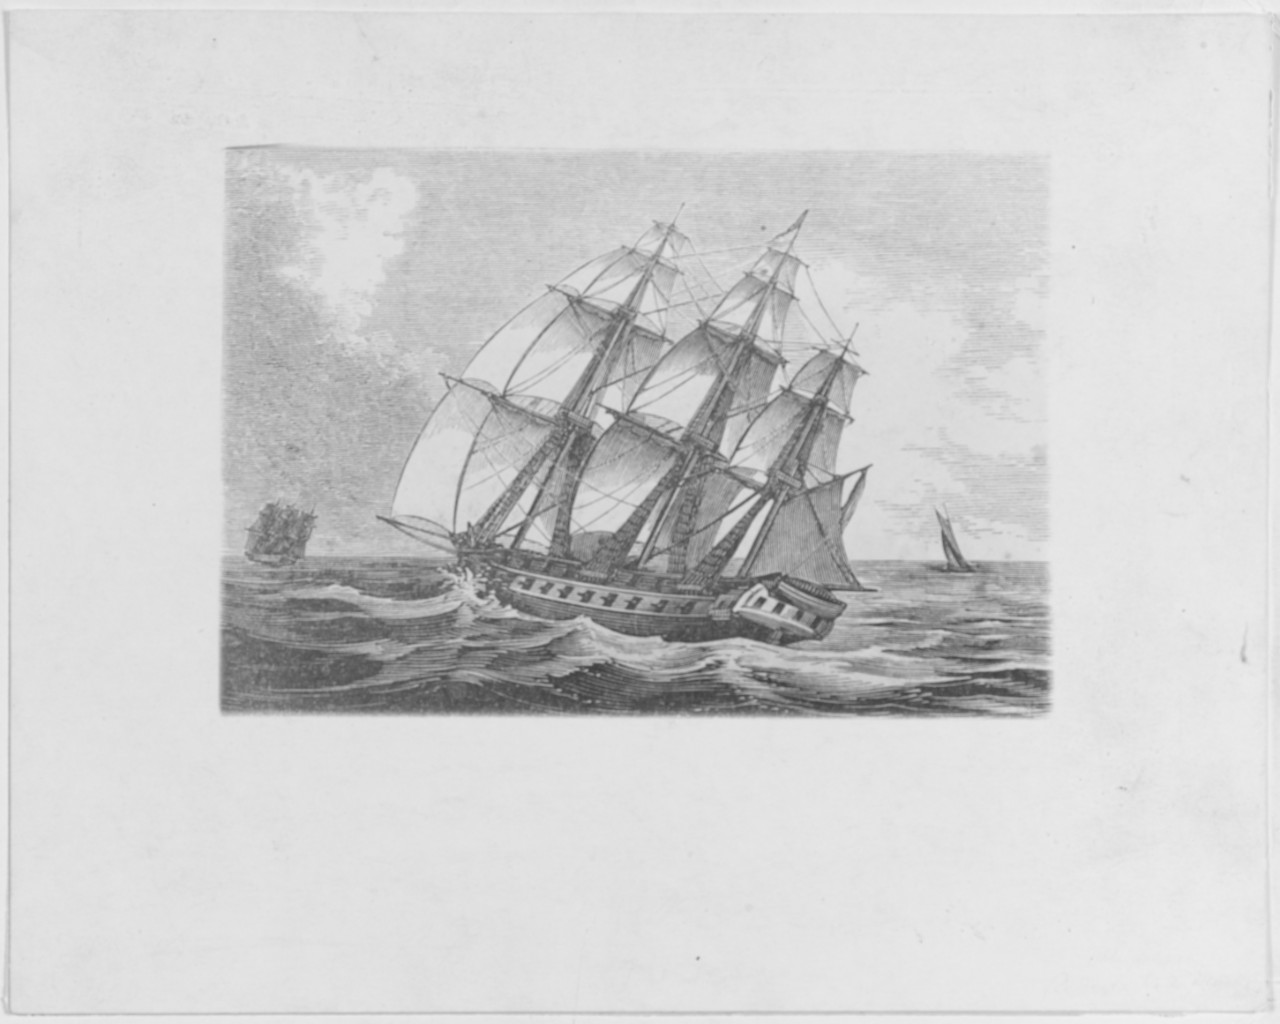 USS ALLIANCE, 1778-85